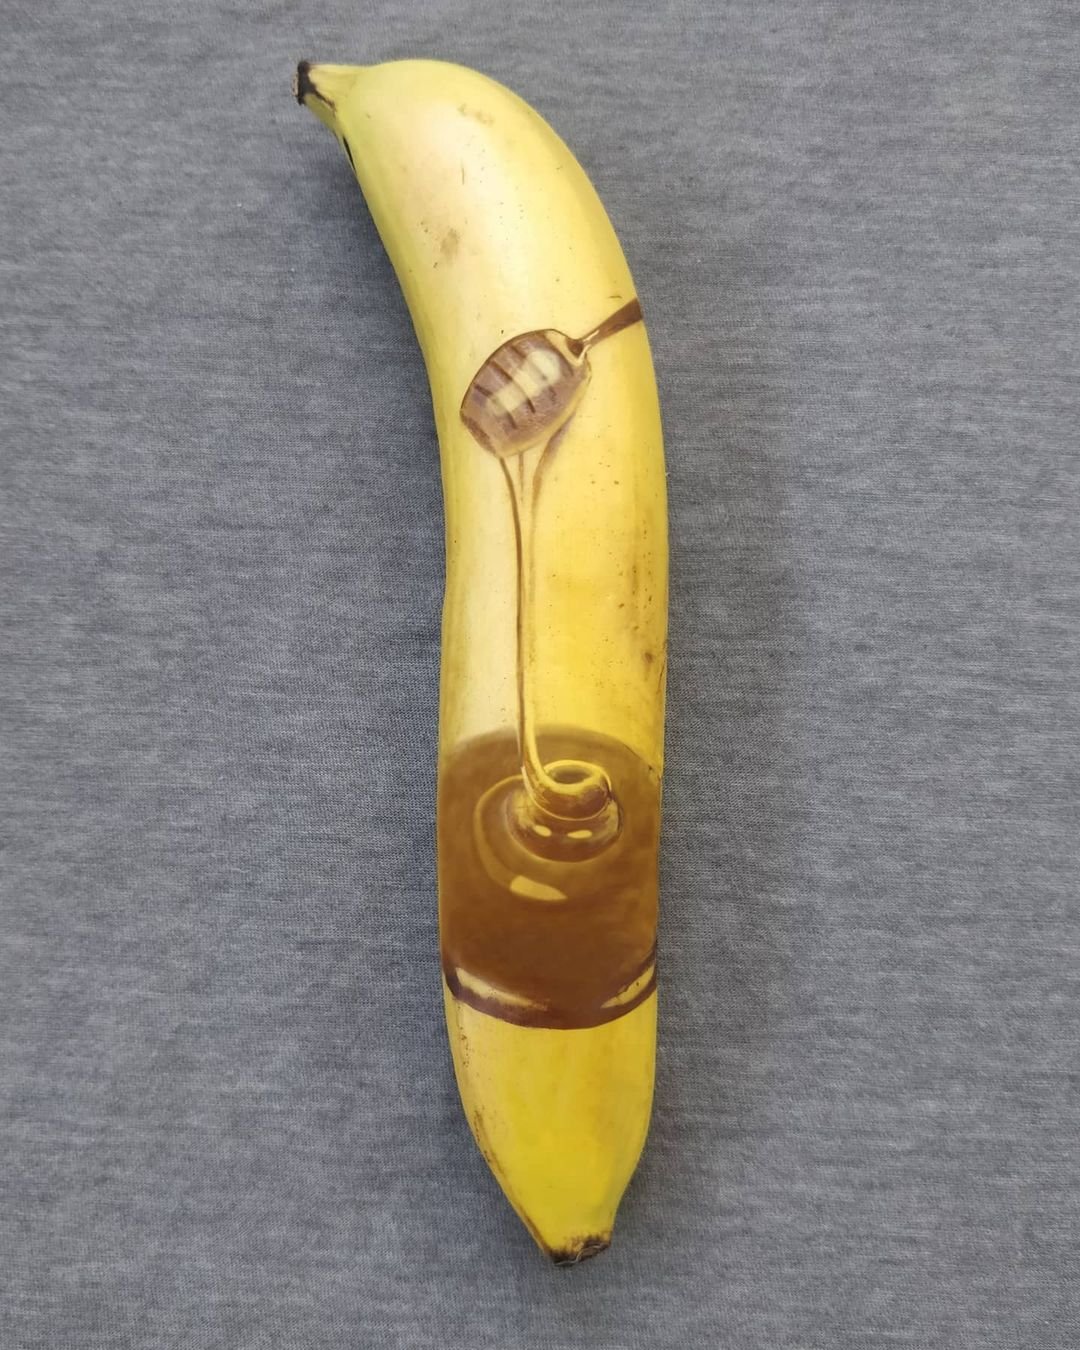 Japonês faz desenhos artísticos em cascas de bananas - Bizarro - Extra  Online